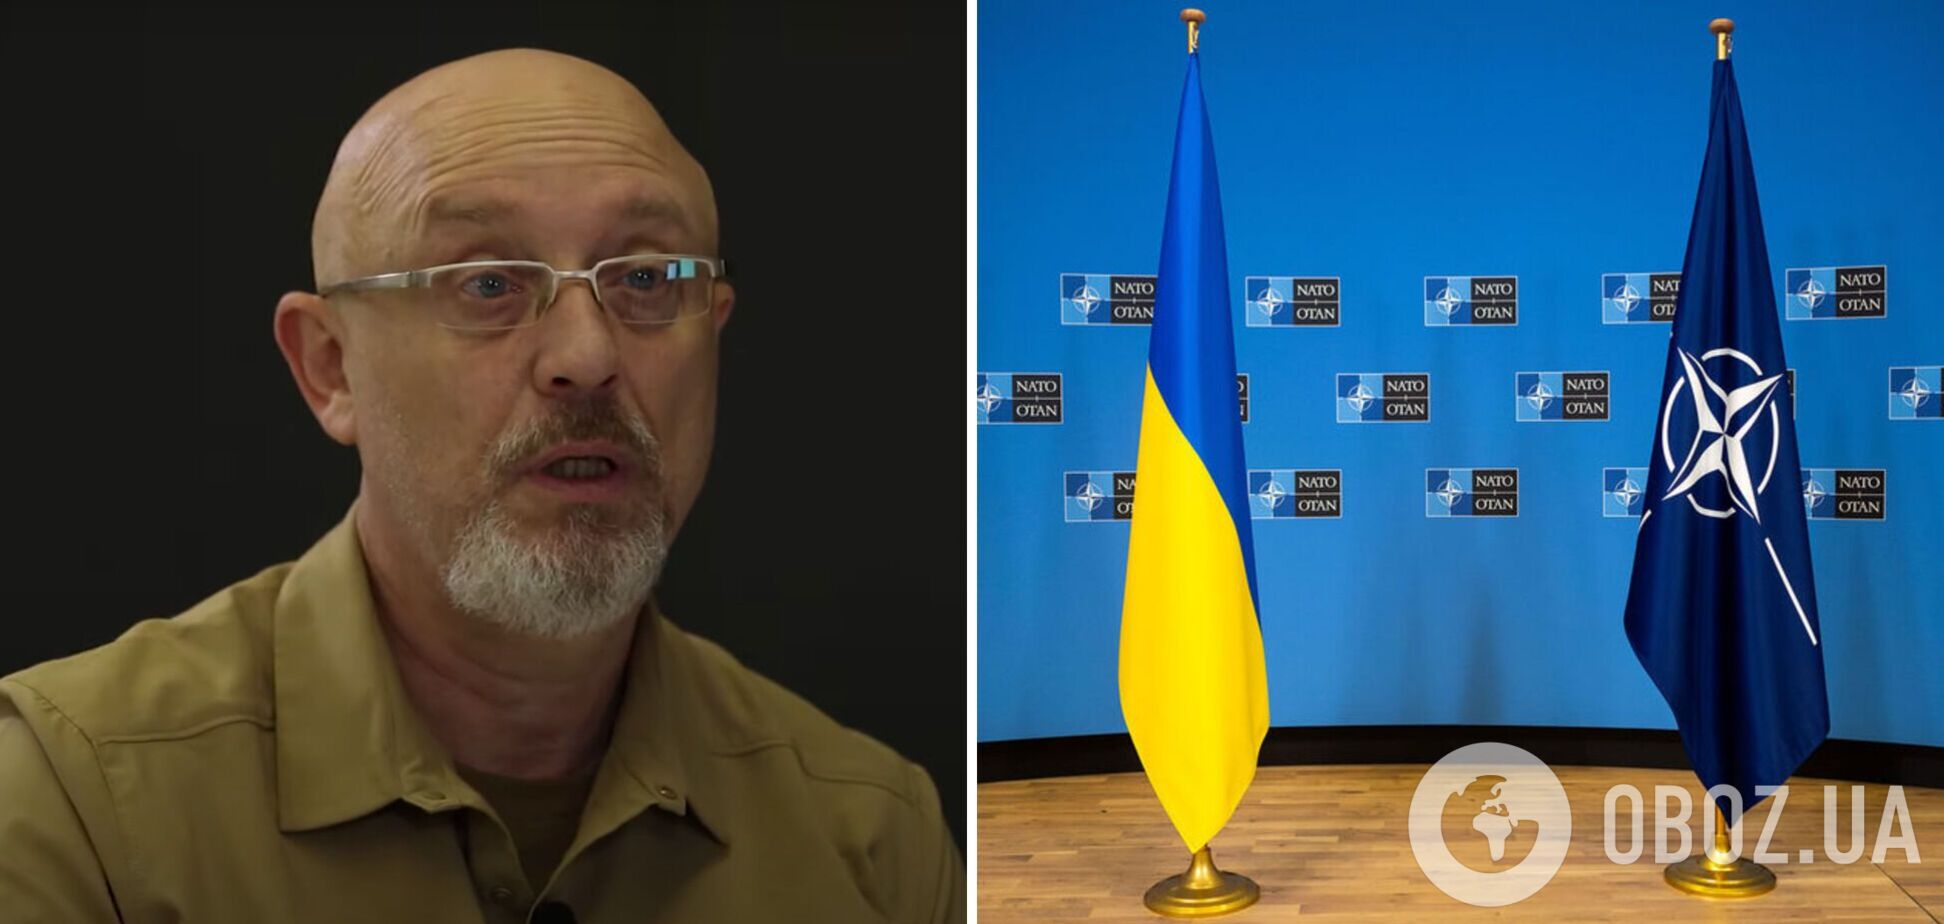 'Це була найбільша помилка': Резніков назвав країну, яка виступила категорично проти вступу України в НАТО 2008 року